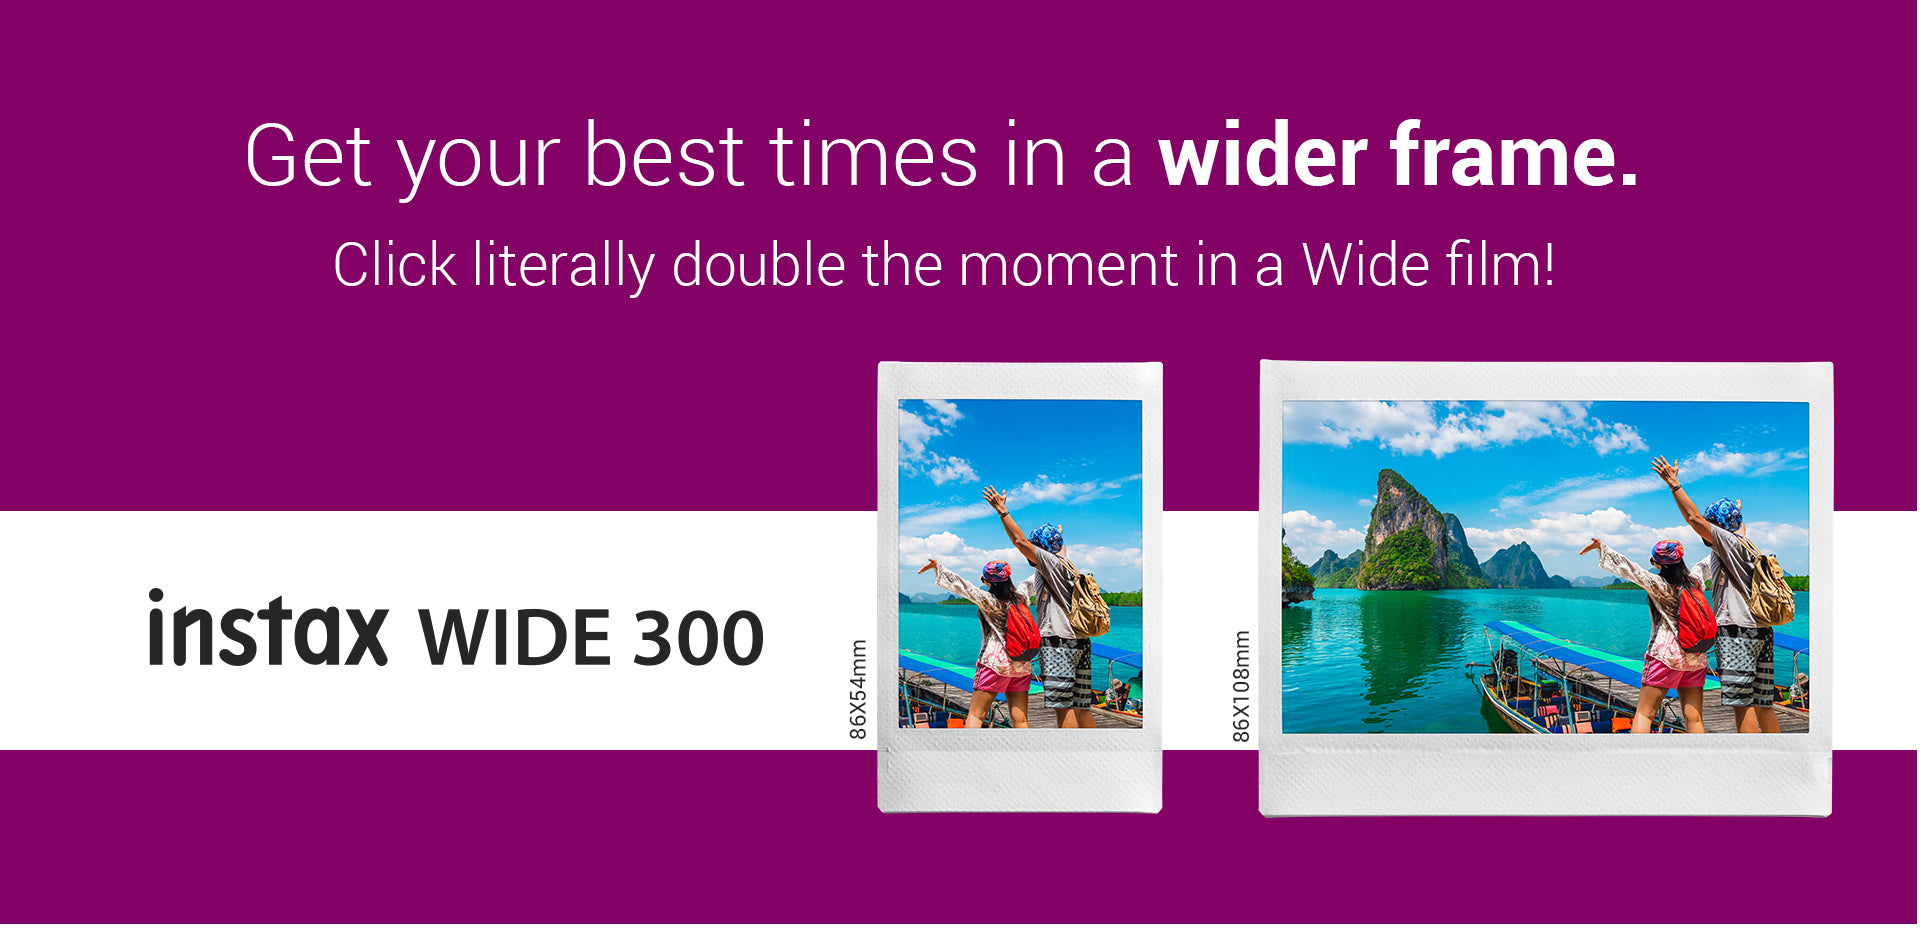 Instax wide 300 - Portrait & landscape mode 